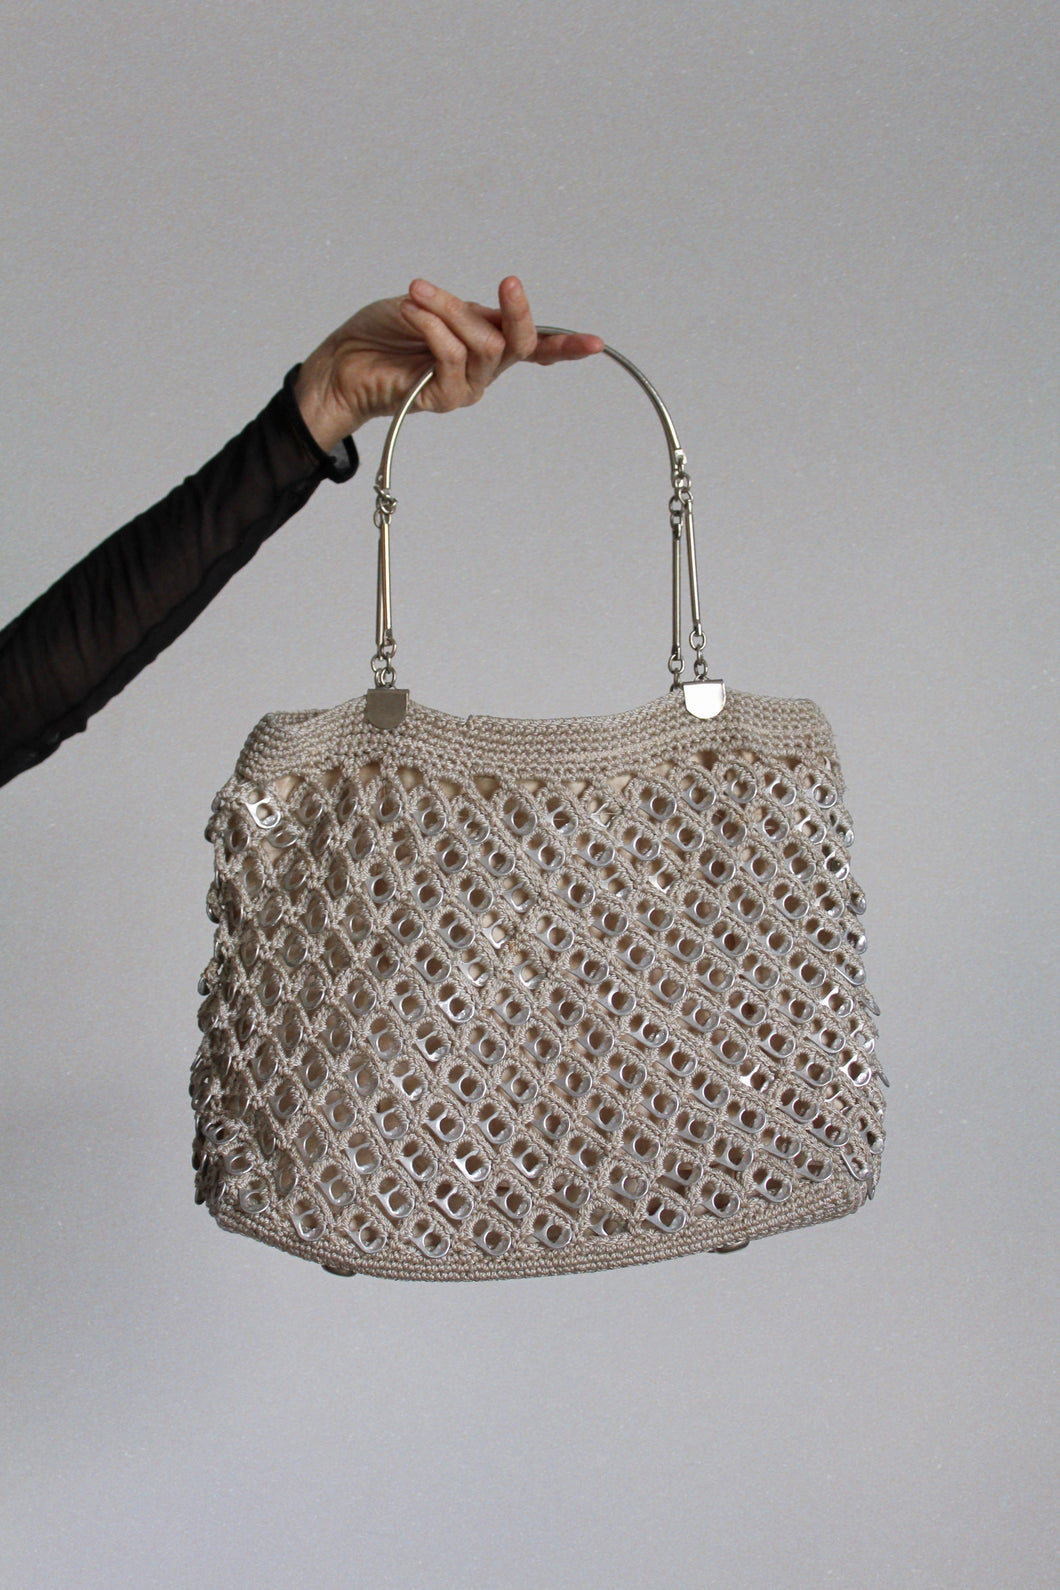 1970s Silver Soda Tab Crochet Handbag